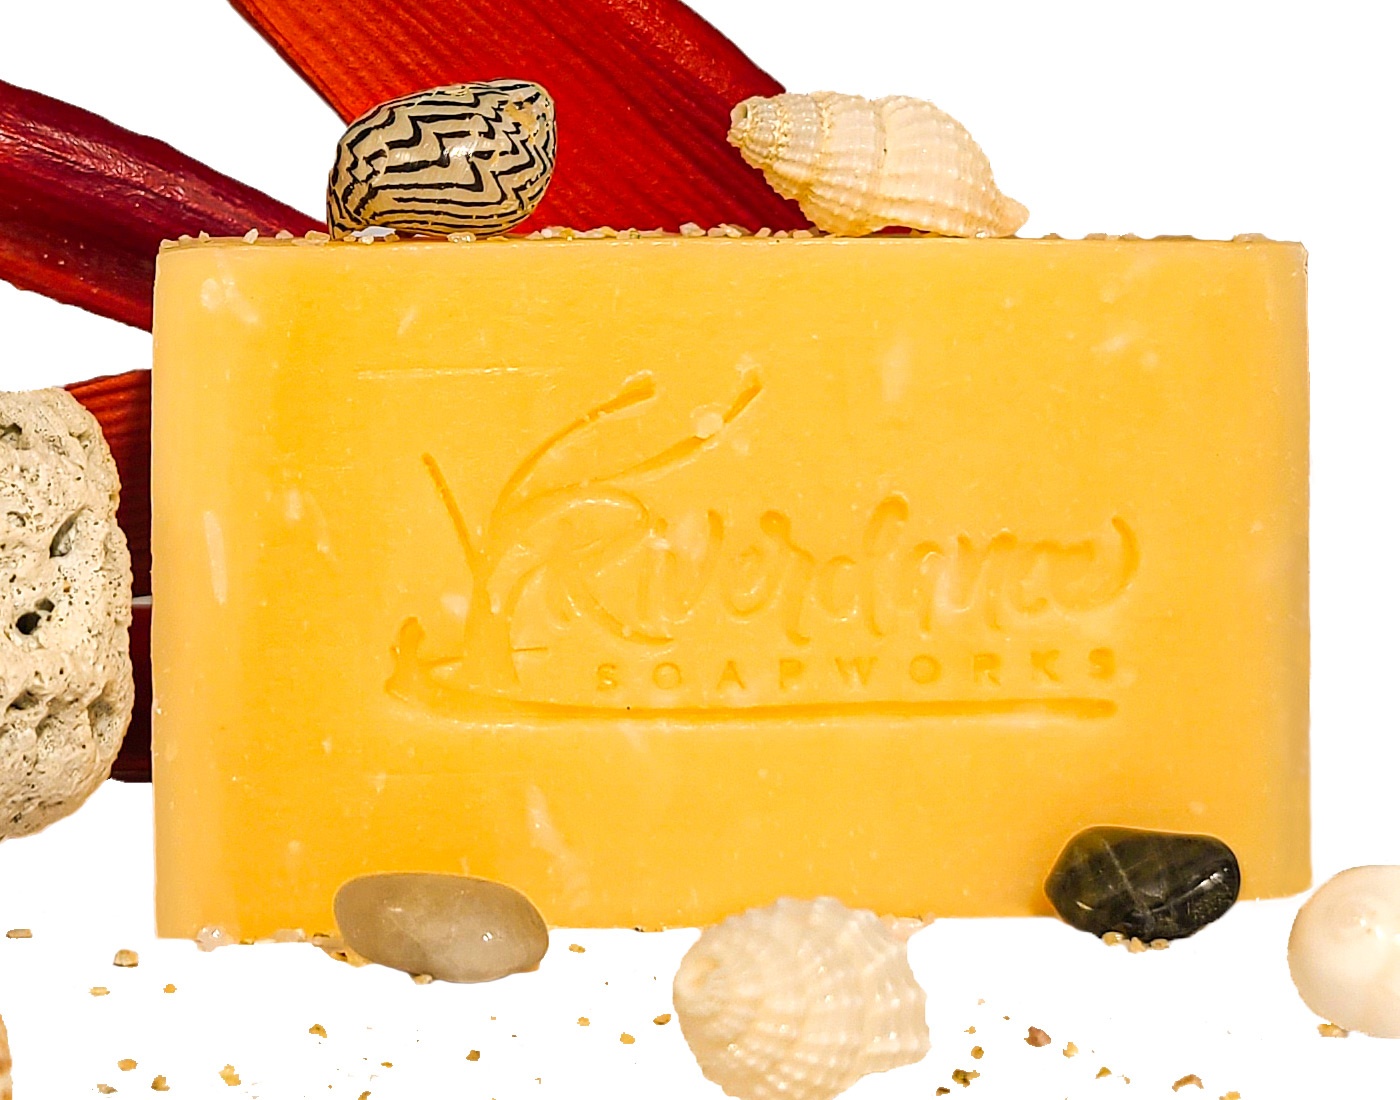 Kauai Ginger soap product image